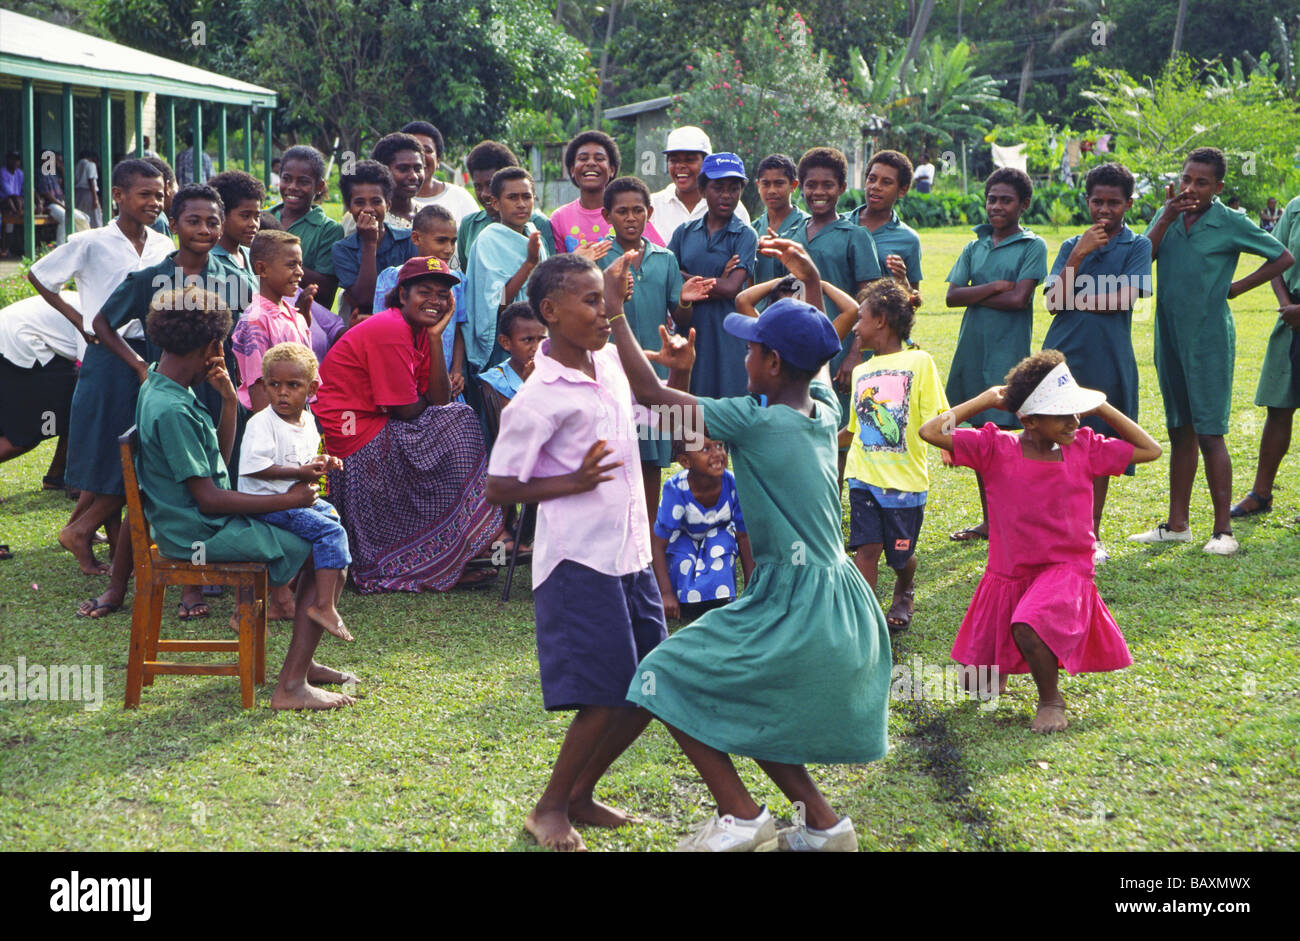 South Pacific Fiji Islands Vitu Levu school class dancing outdoor Stock Photo